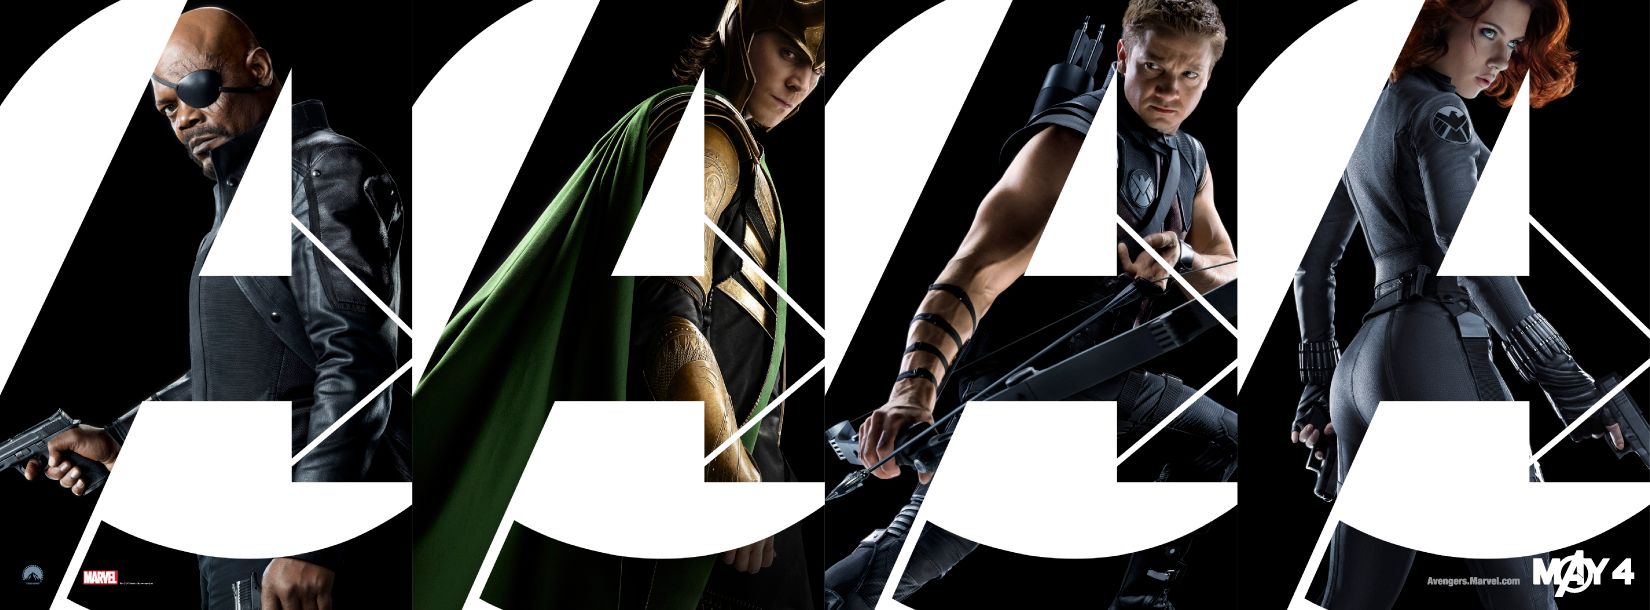 The Avengers Banner #1